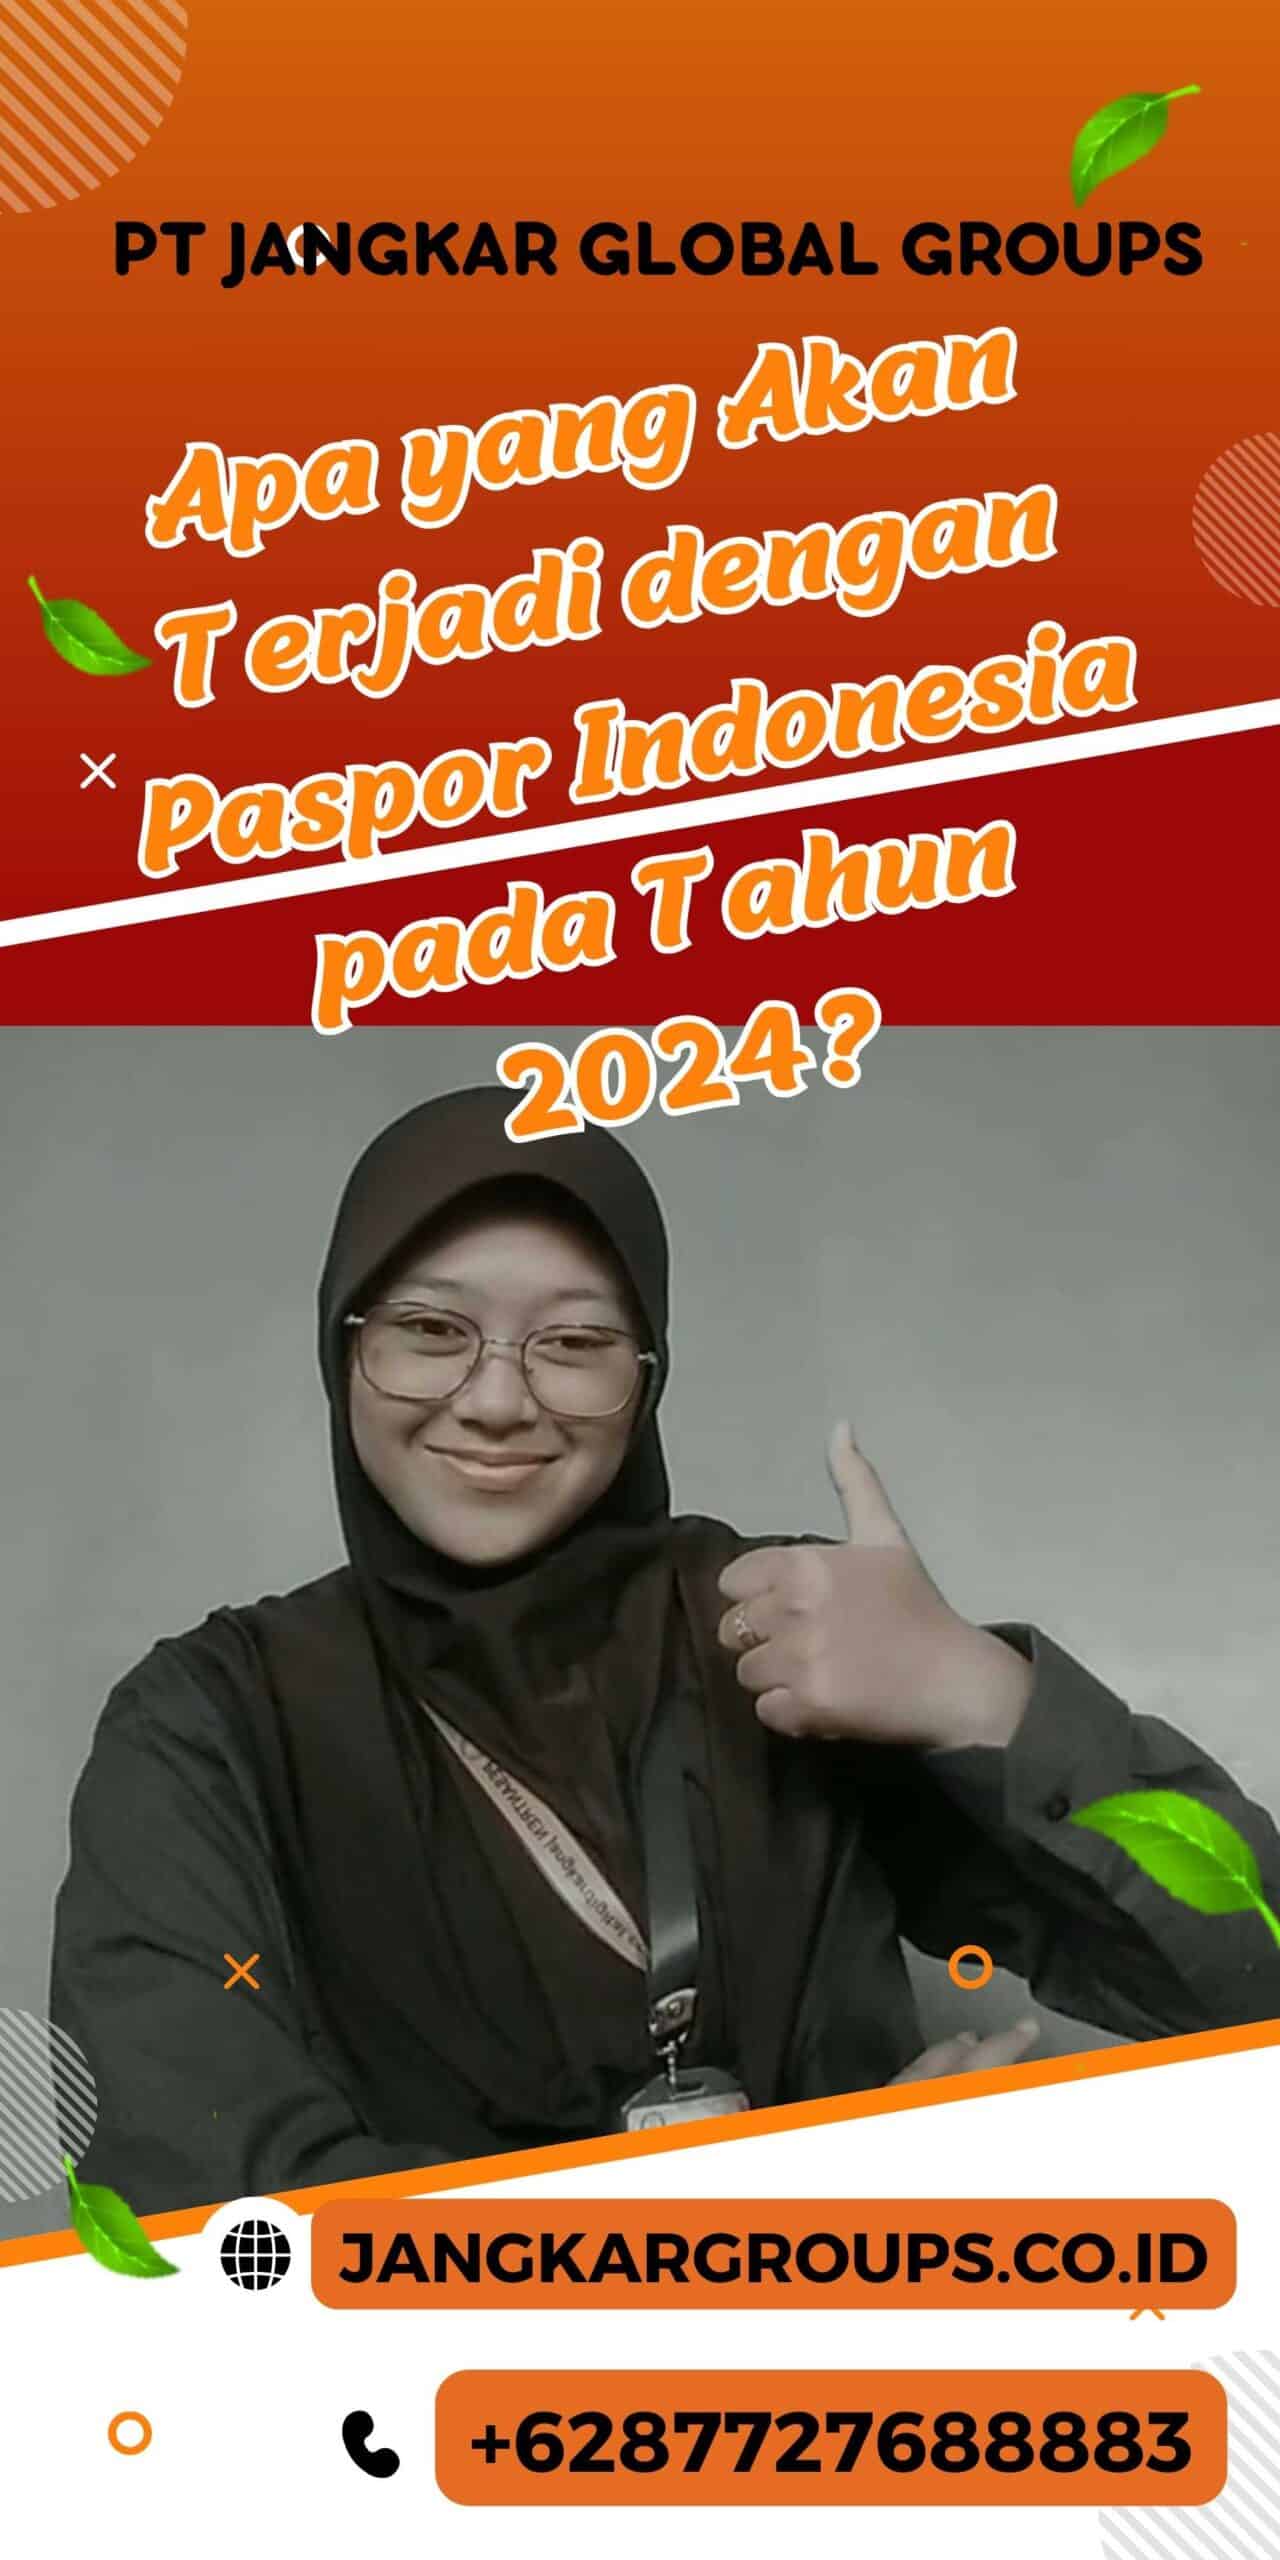 Apa yang Akan Terjadi dengan Paspor Indonesia pada Tahun 2024?, Ganti Nama Paspor Indonesia 2024